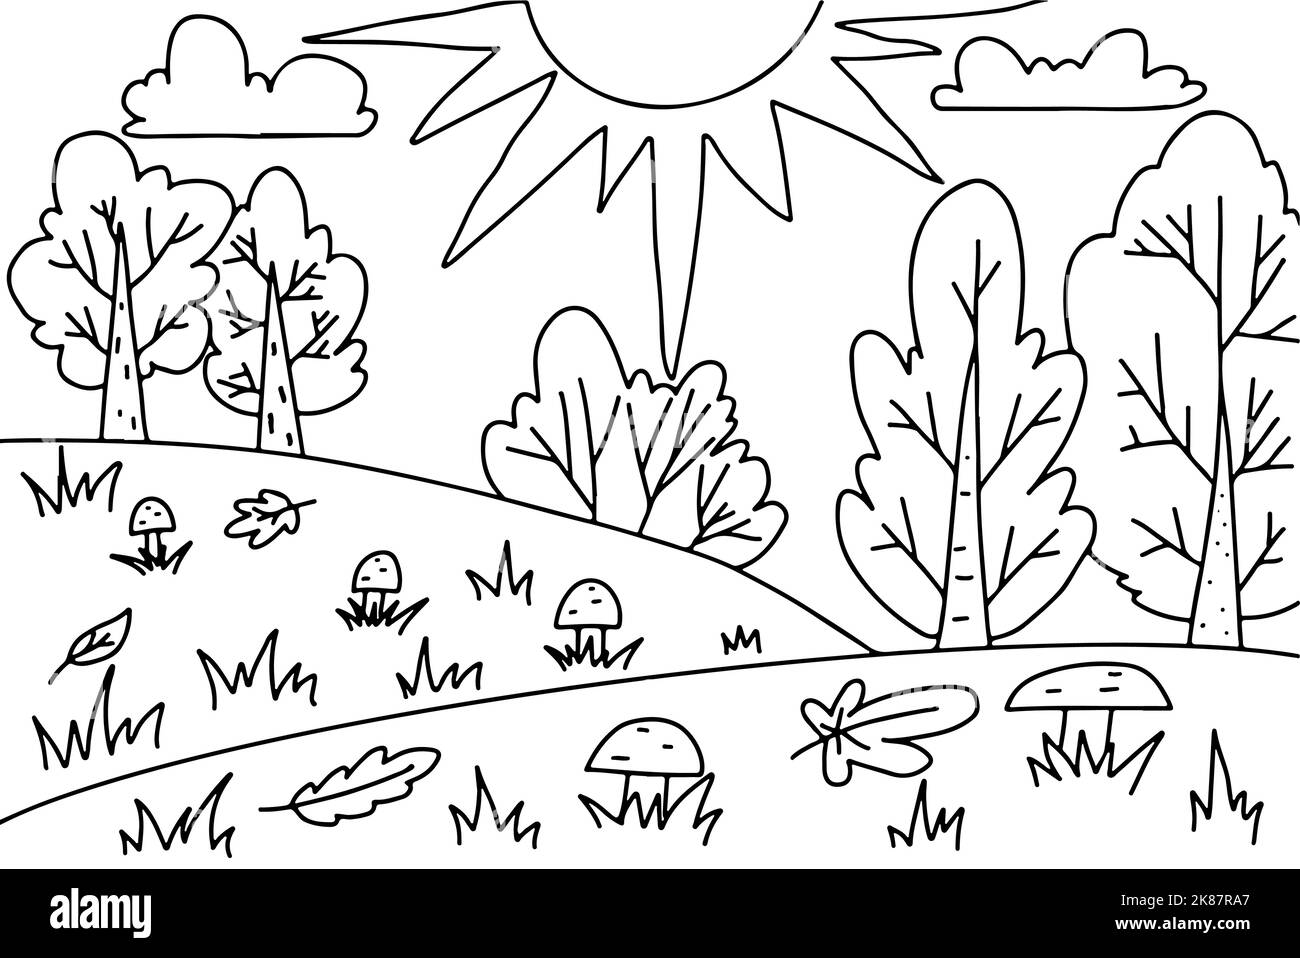 Pagina da colorare per bambini. Paesaggio con sole, alberi, cespugli, funghi. Illustrazione disegnata a mano in stile doodle. Foglio attività. Illustrazione Vettoriale